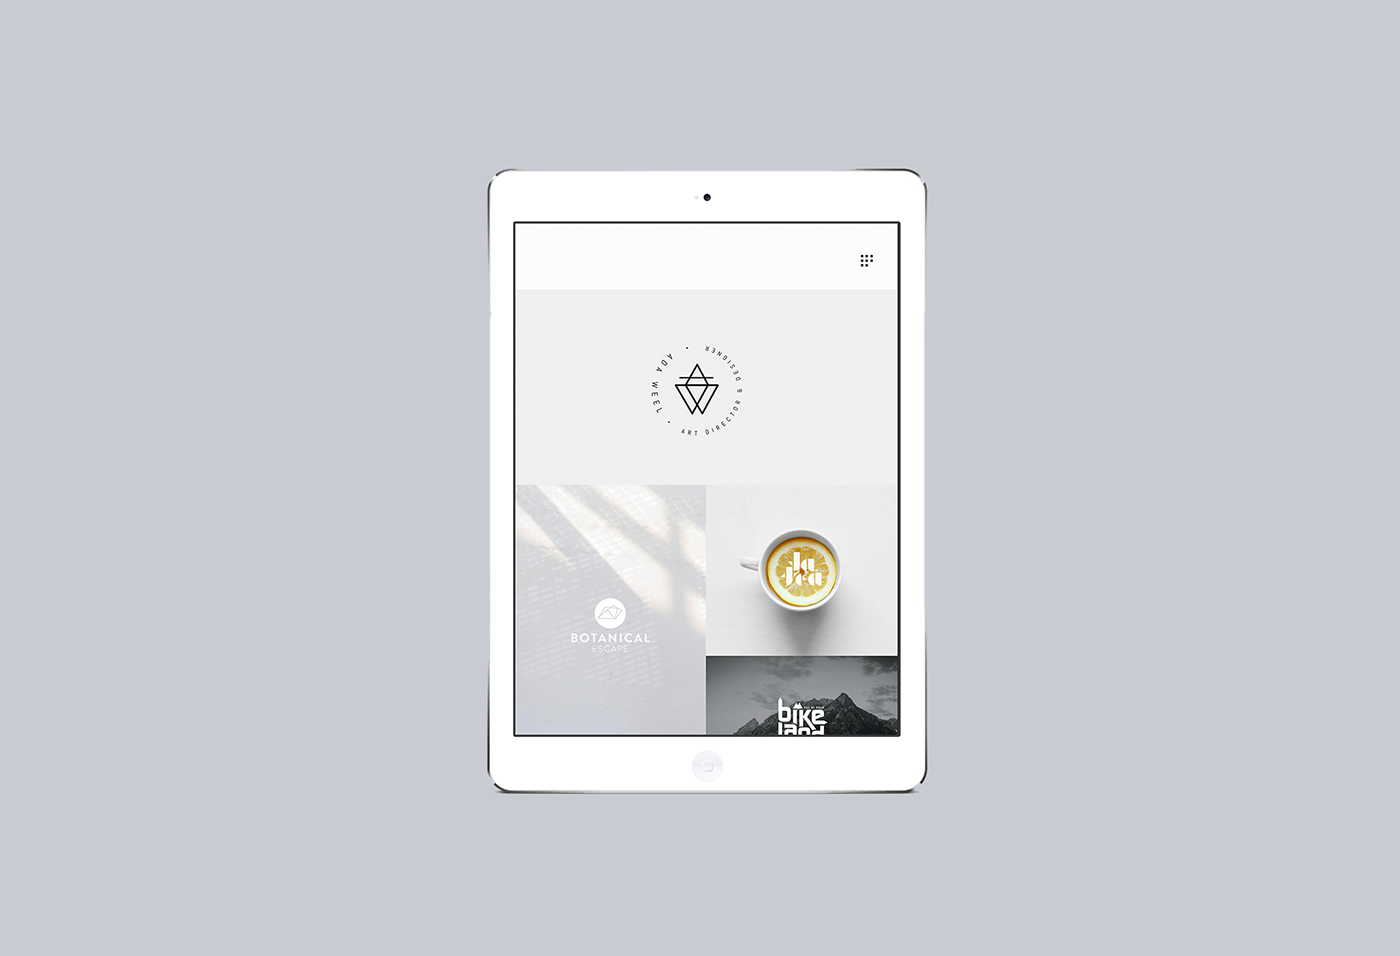 logo Webdesign Mockup businesscard stationary tootebag nordic simple iPad iMac ArtDirector designer selvpromotion paper